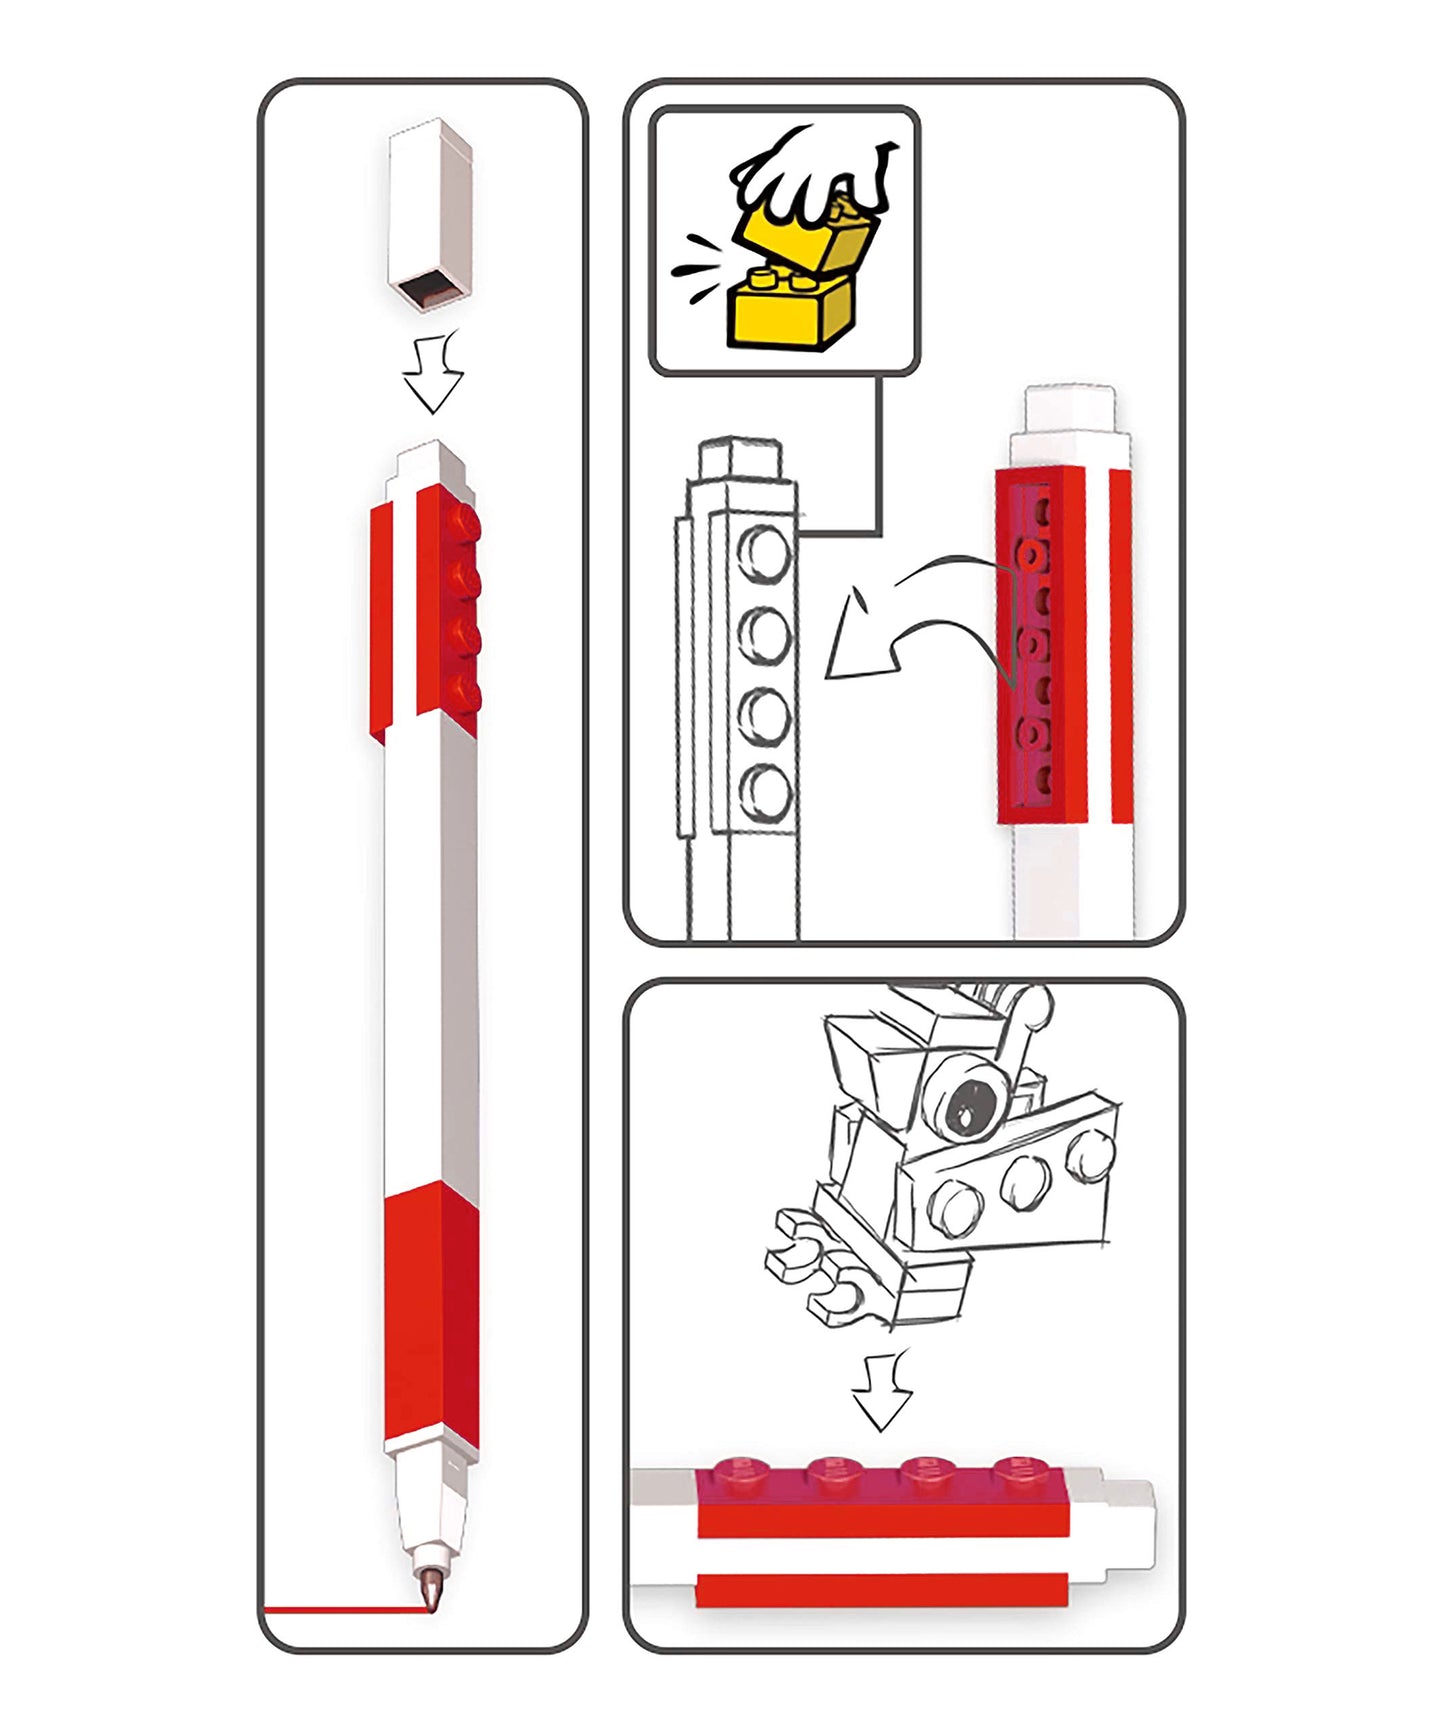 IQ レゴ 2.0シリーズ 文房具 赤 ジェルペン ミニフィギュア付き (52602)